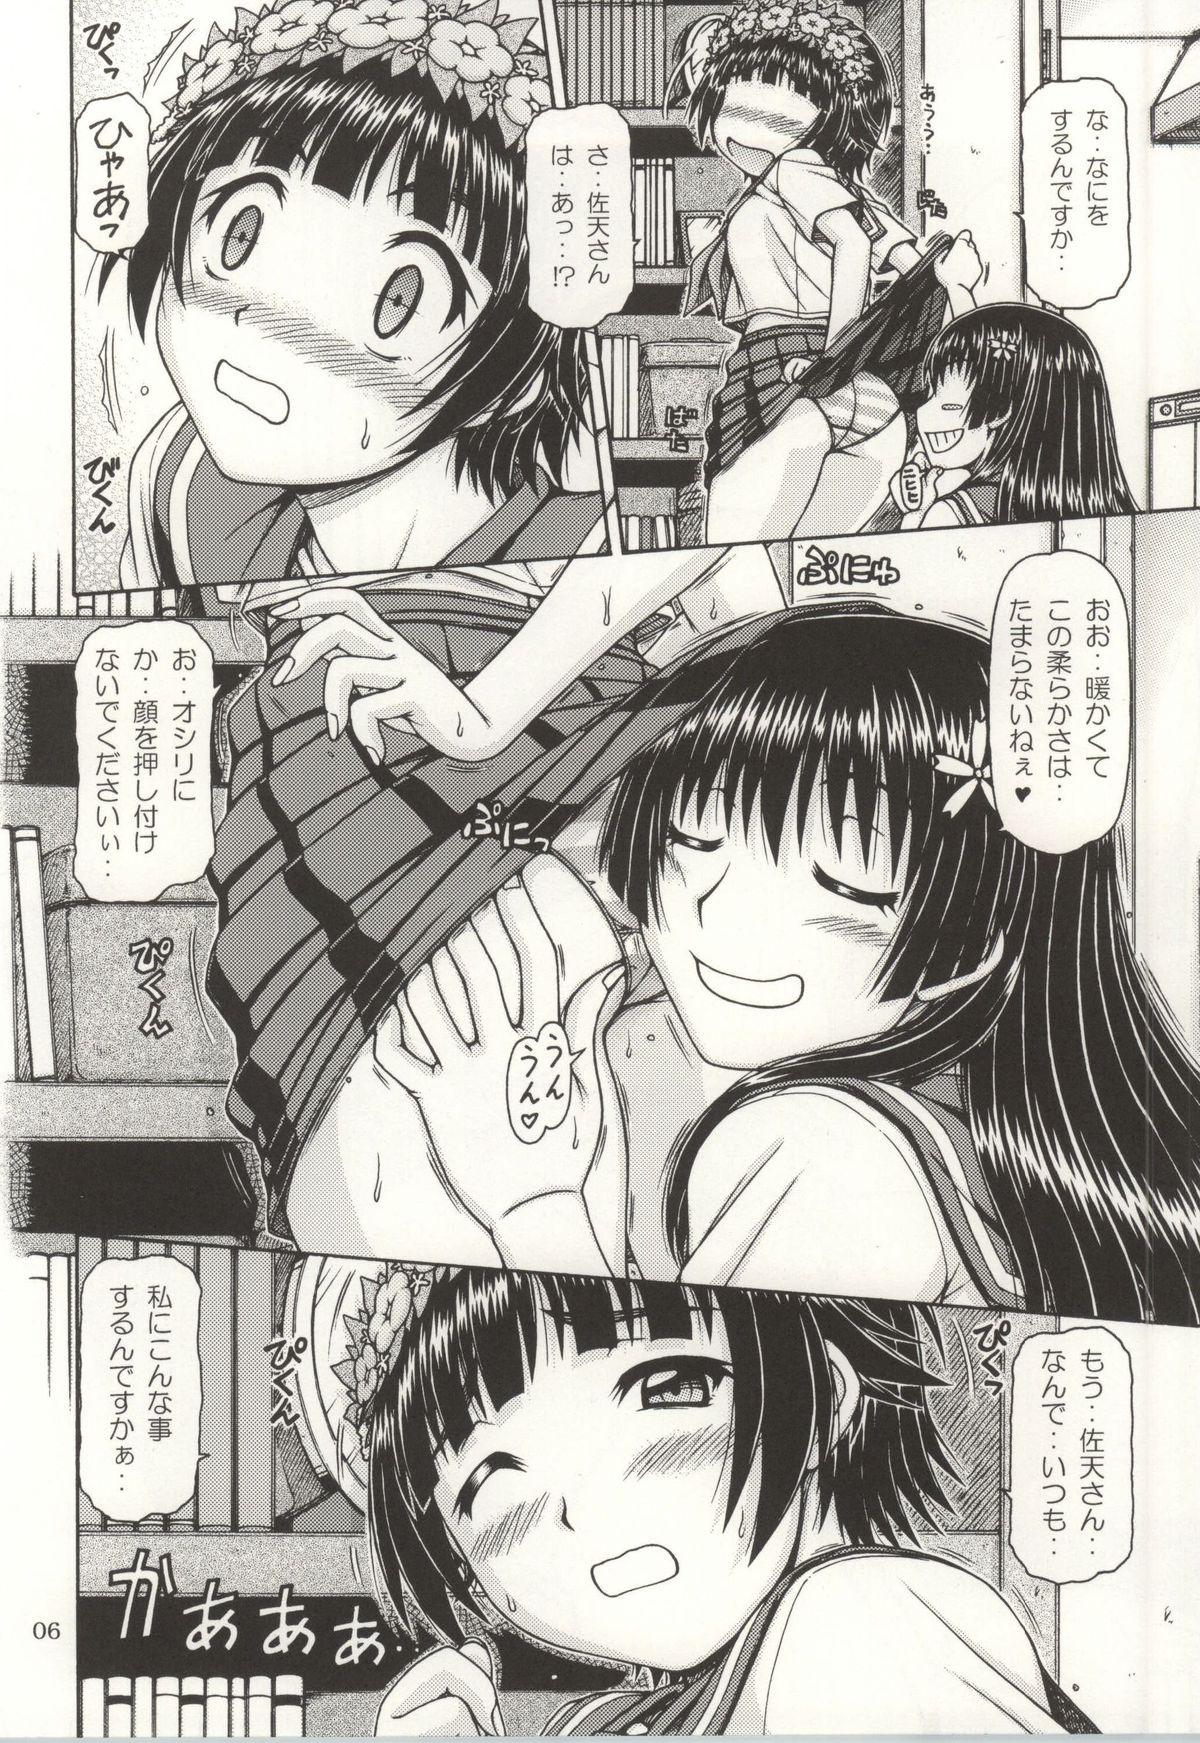 Spreading ONE-SEVEN+ Vol.01 - Toaru kagaku no railgun Toaru majutsu no index Footjob - Page 4